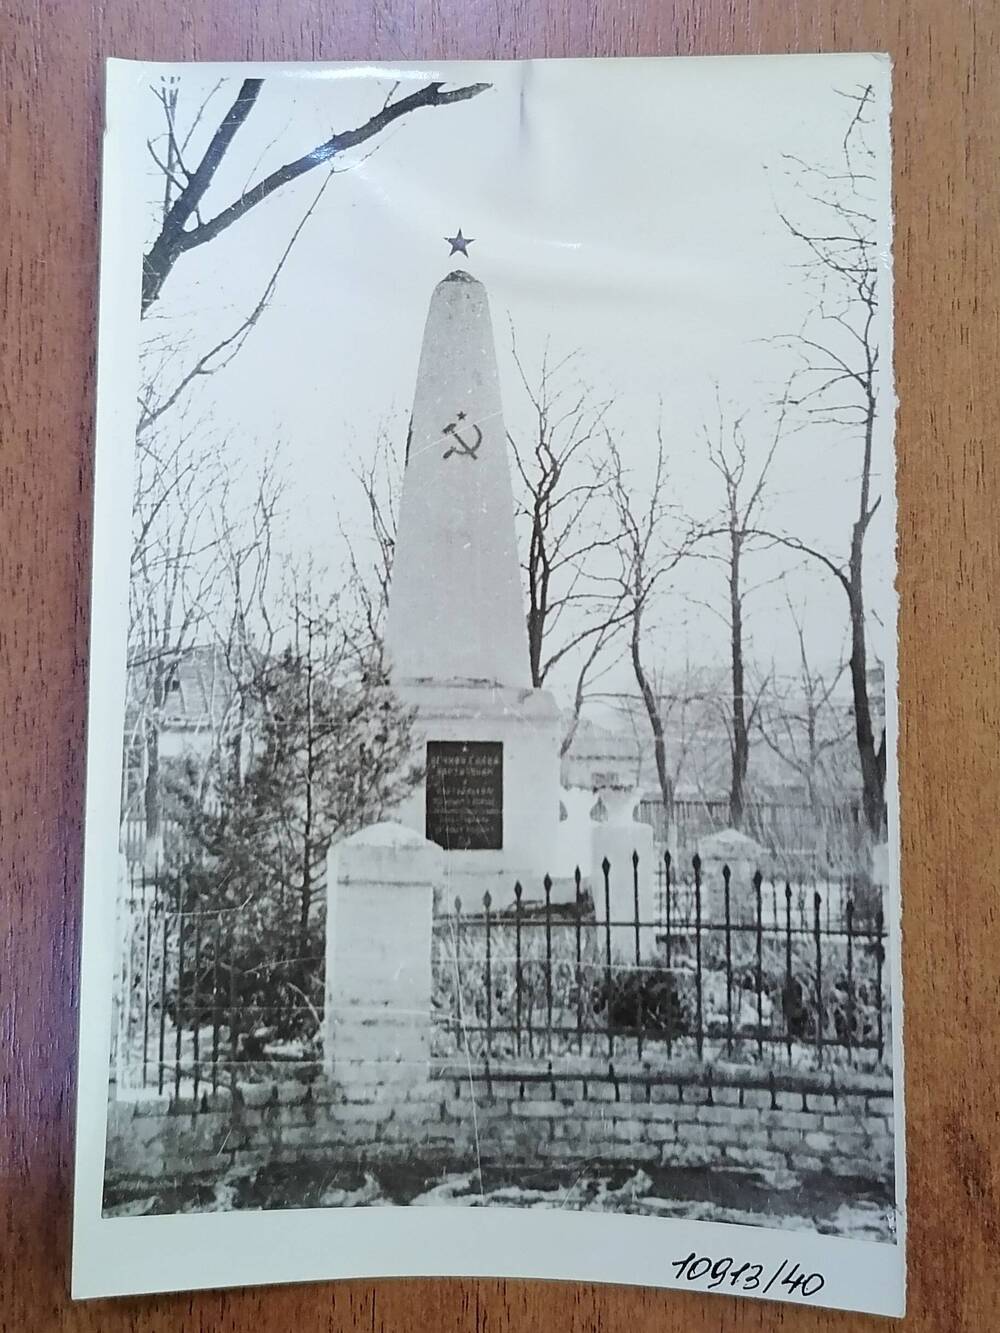 Фото черно-белое памятник, посвященный воинам Гражданской войны 1917-1920 гг. и Великой Отечественной войны 1941-1945 гг.